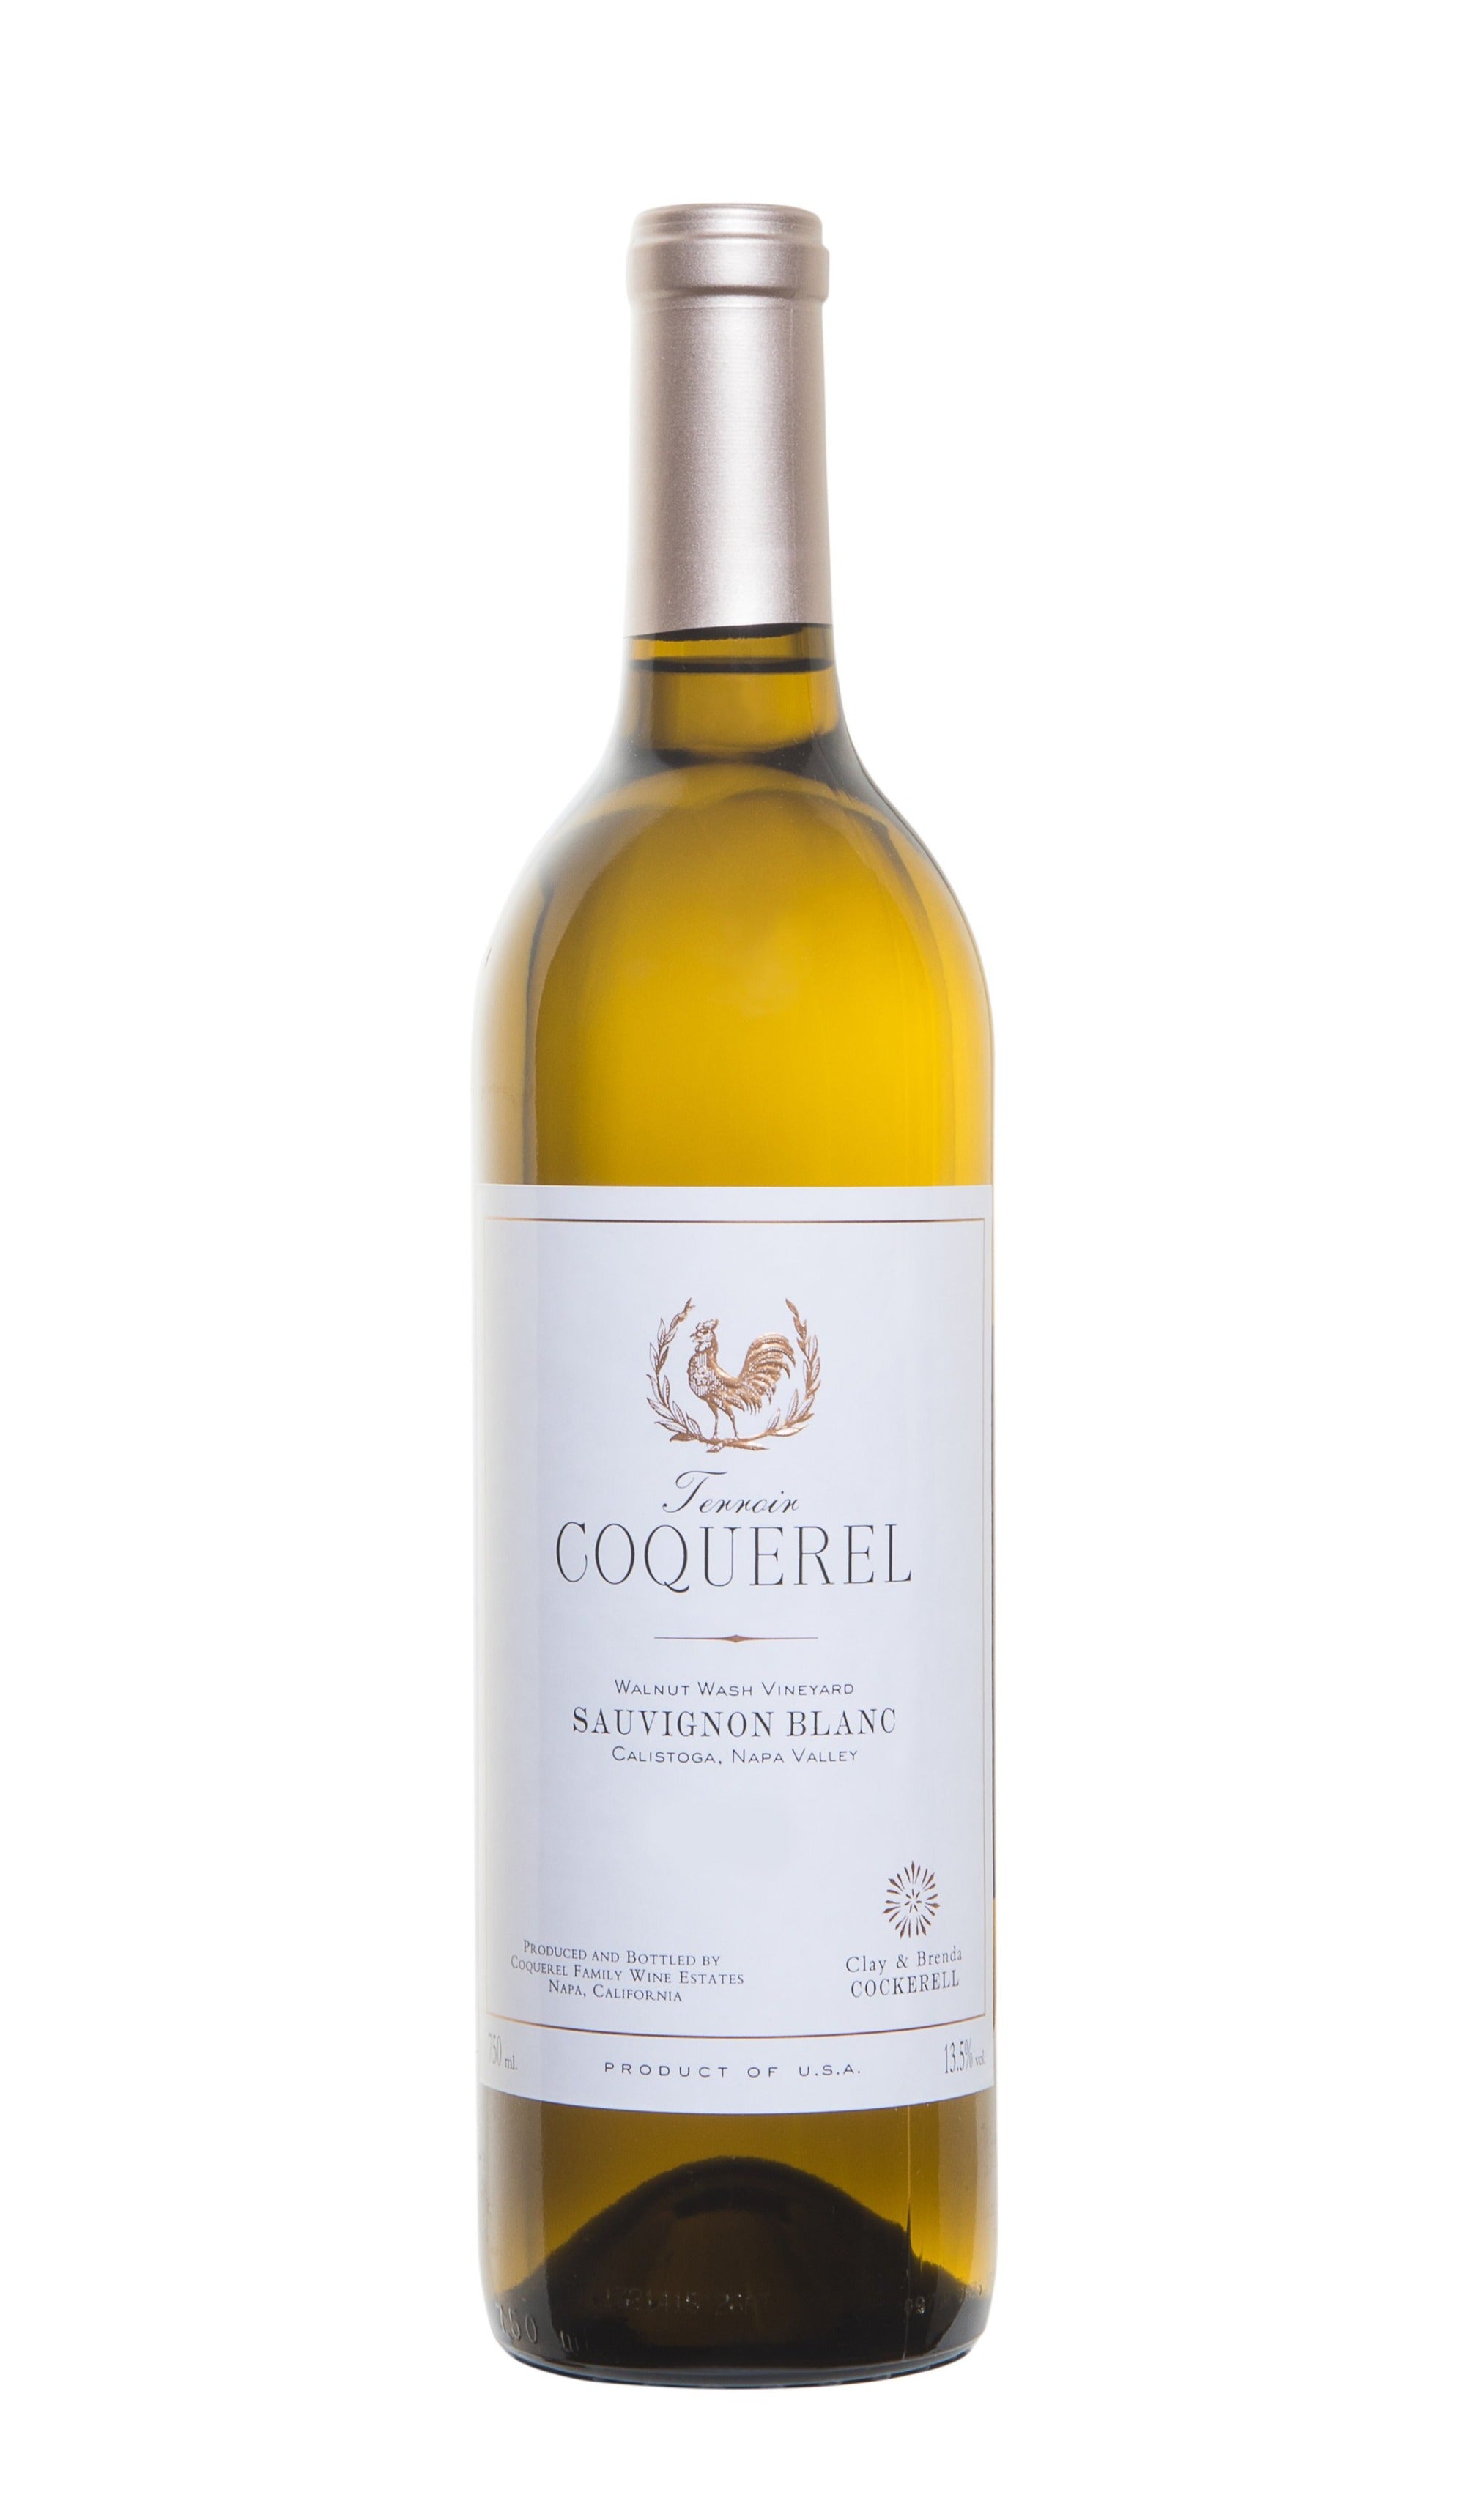 Coquerel Family Wine Estate, Sauvignon Blanc, Napa Valley 2019